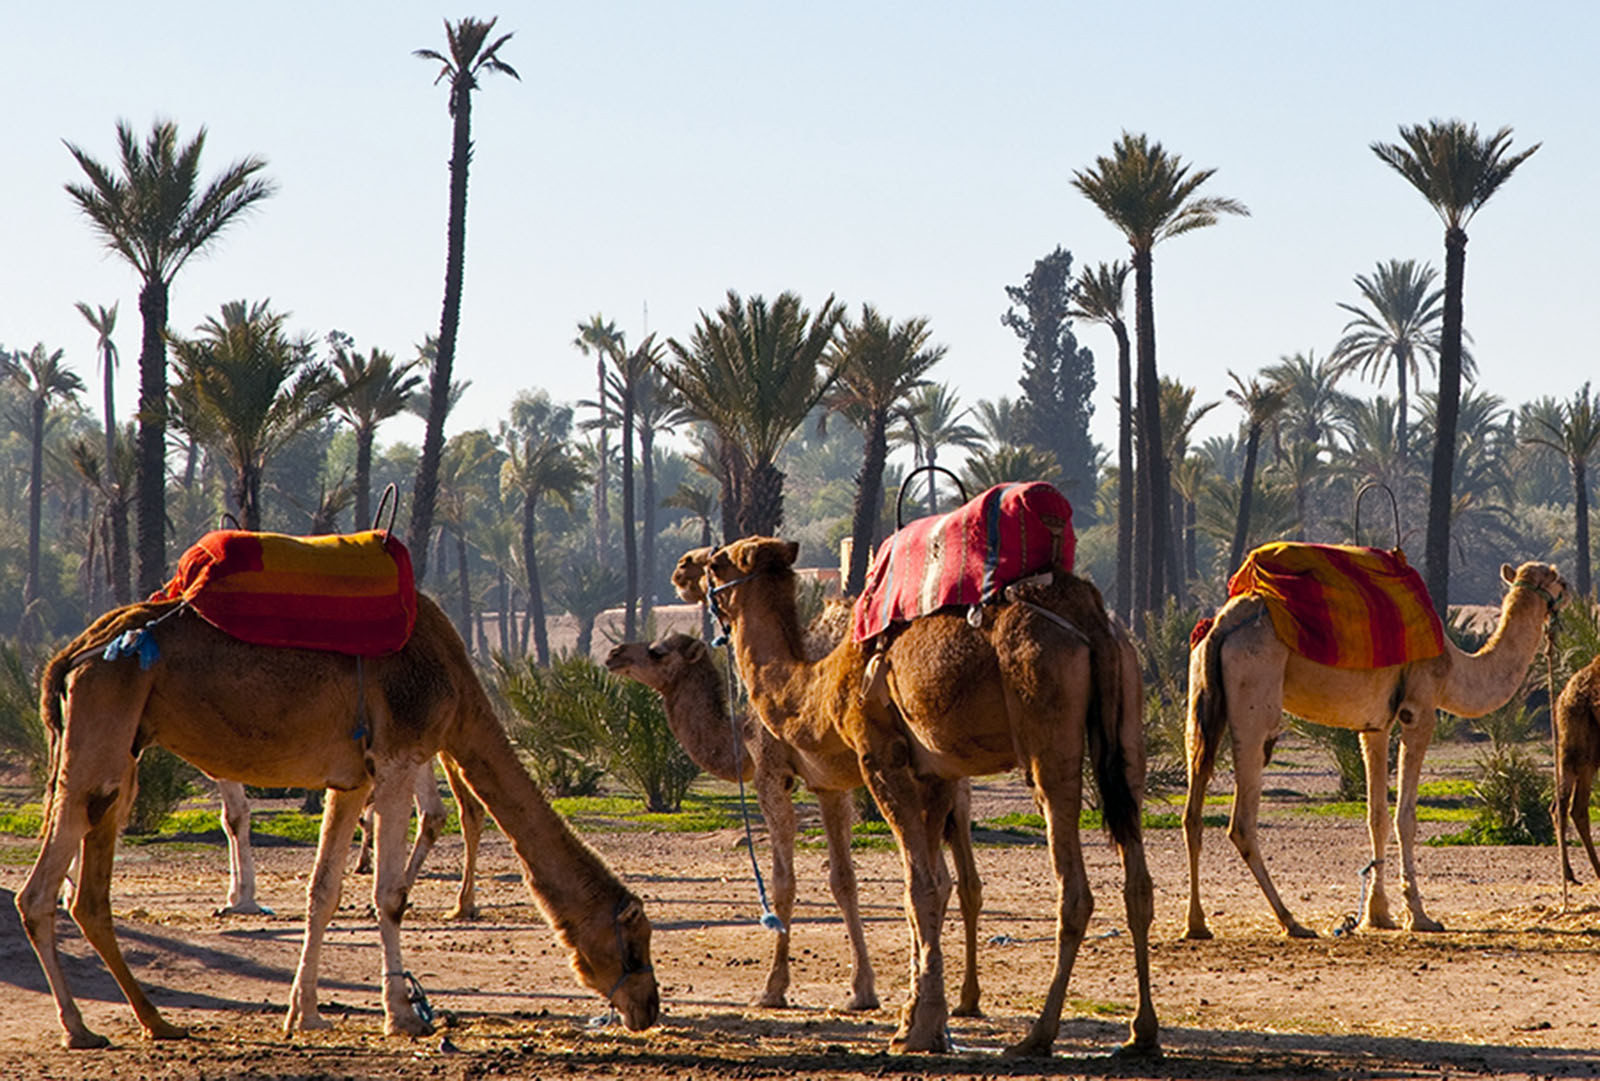 4-marrakech-palmeral-camellos-visit-morocco-com.jpg 